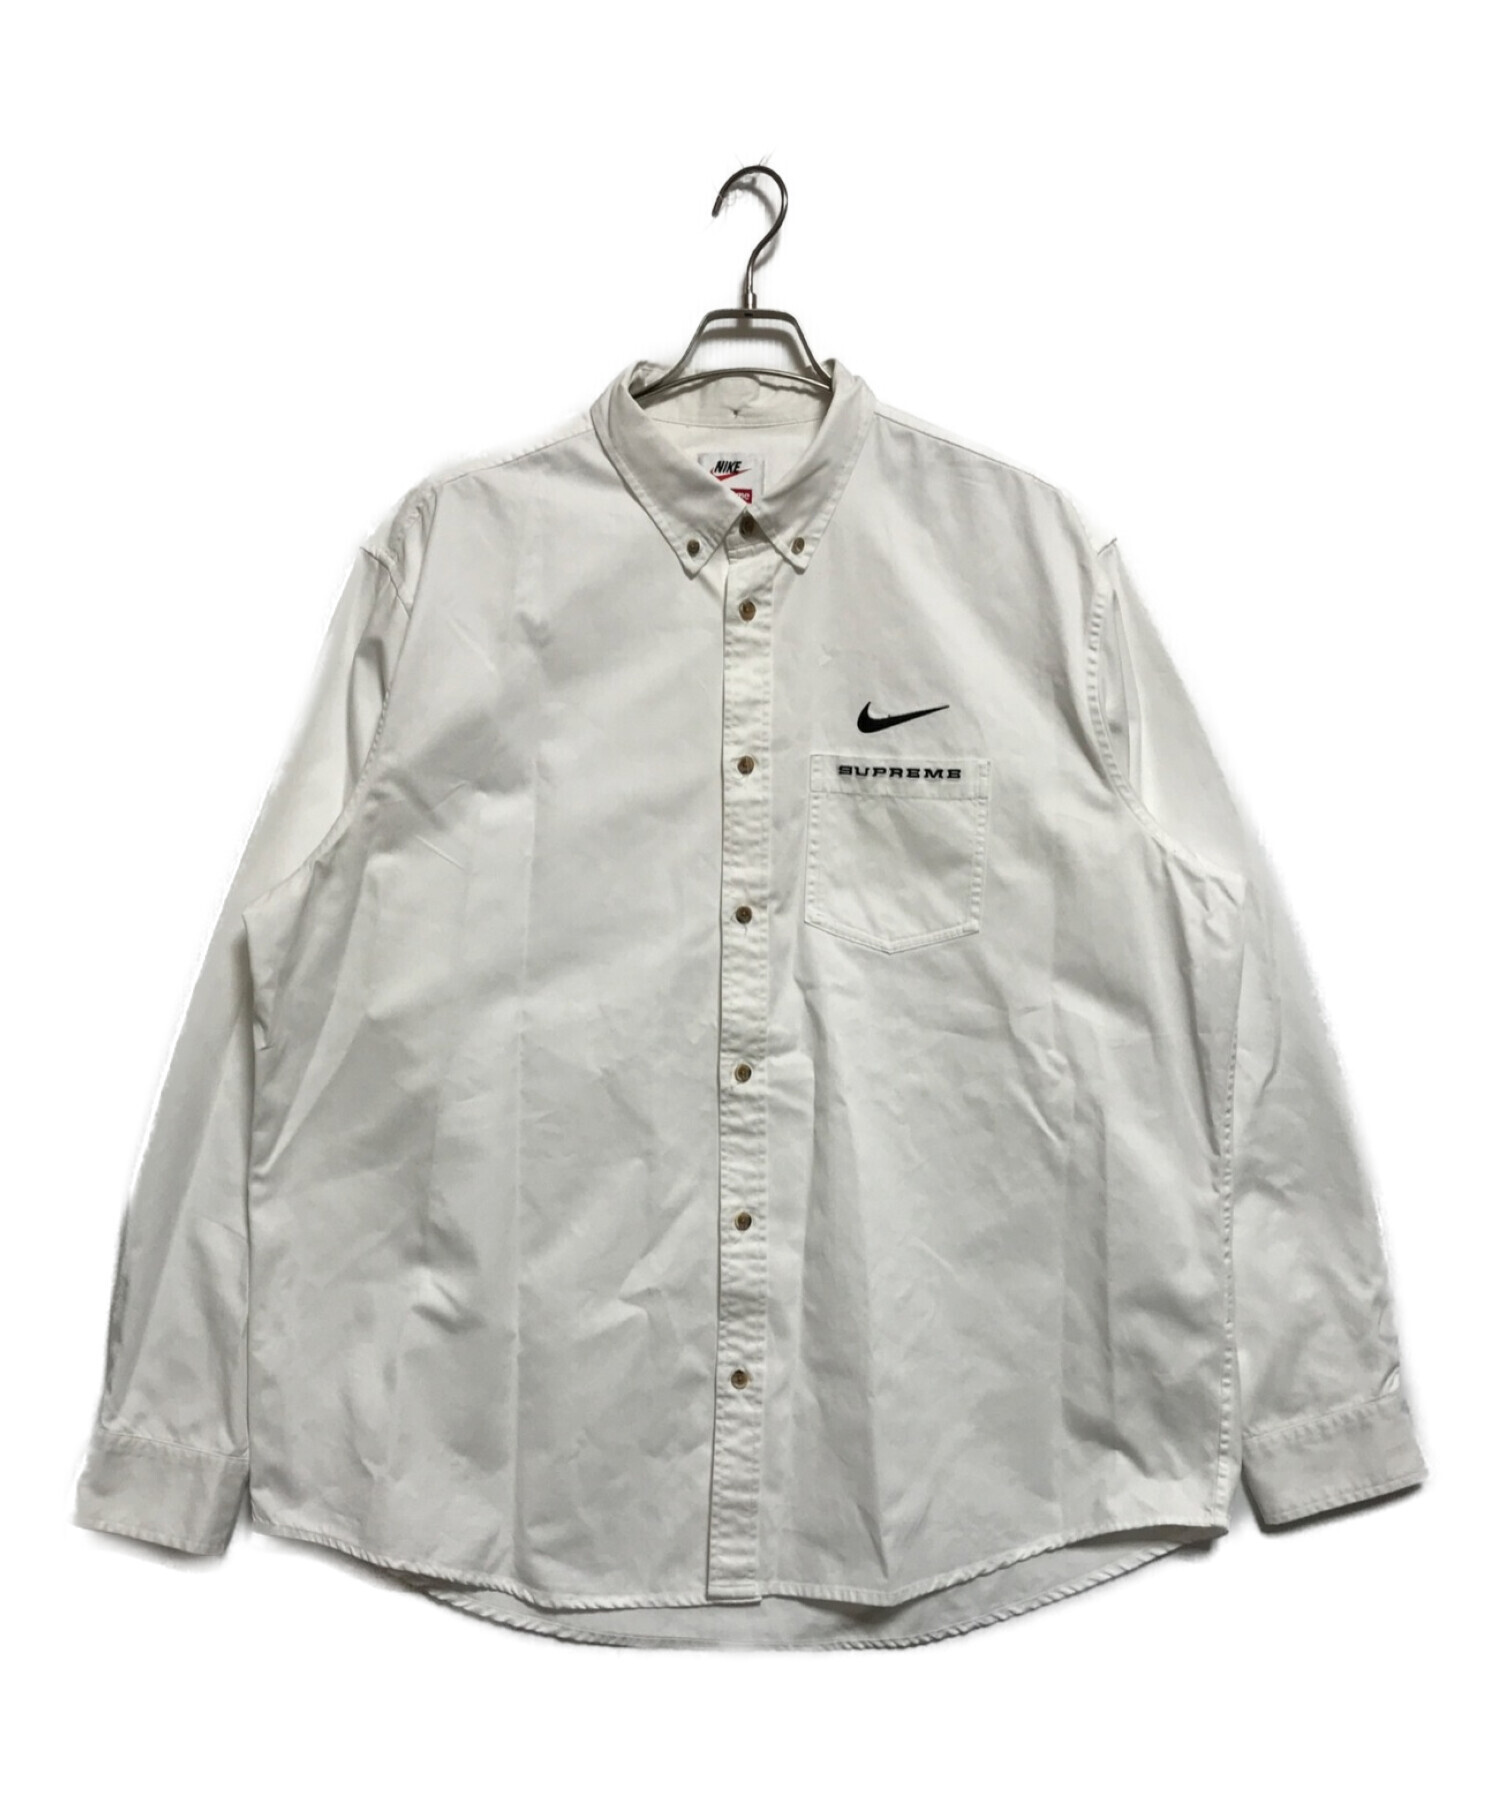 NIKE (ナイキ) SUPREME (シュプリーム) Cotton Twill Shirt ホワイト サイズ:XL(下記参照)